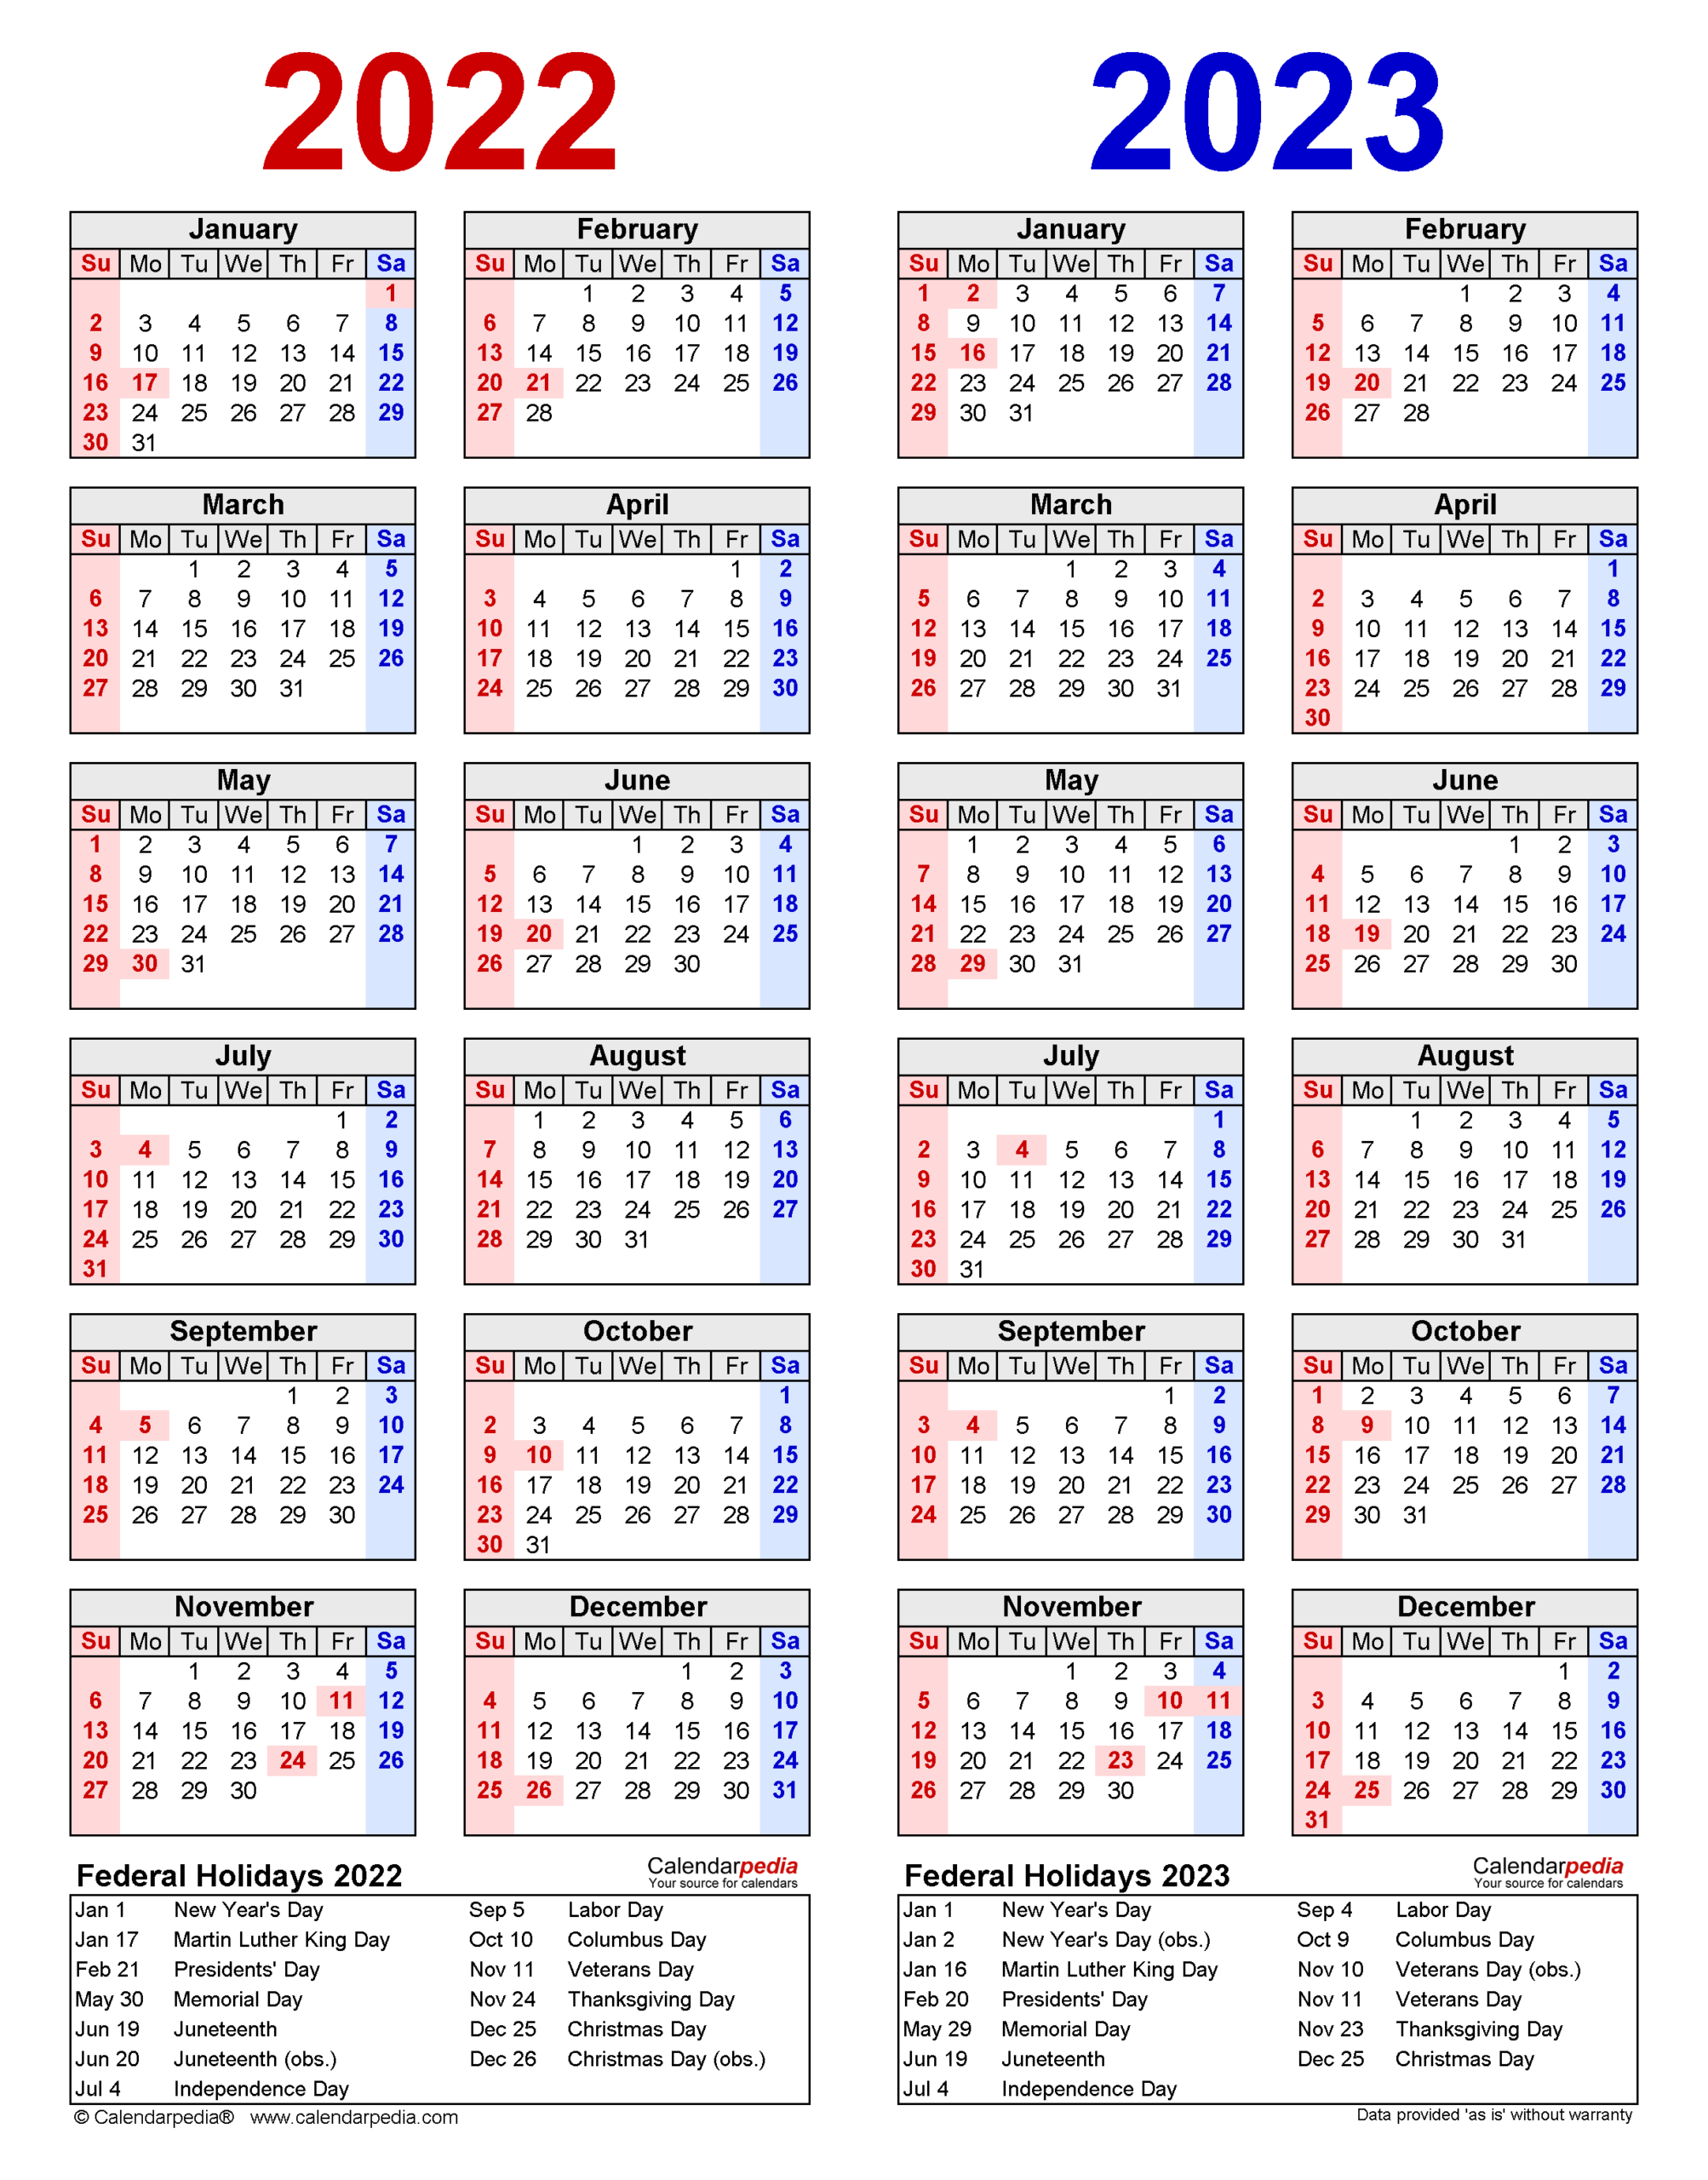 Fredonia Calendar 20222023 | October 2022 Calendar regarding 2022 2023 School Calendar Nyc